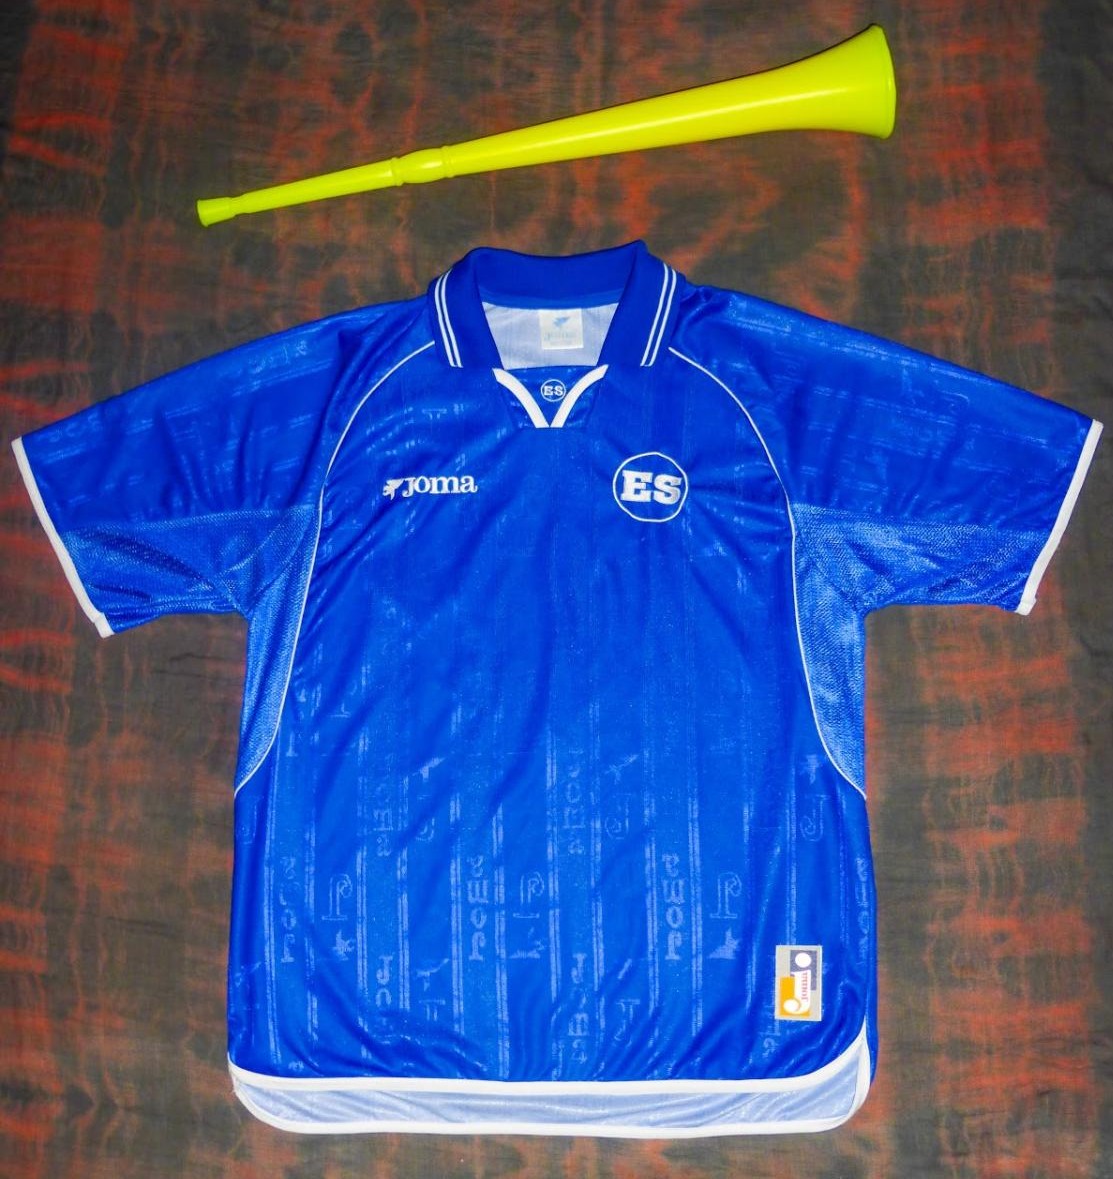 El Salvador Home Camiseta de Fútbol 2000 - 2001.